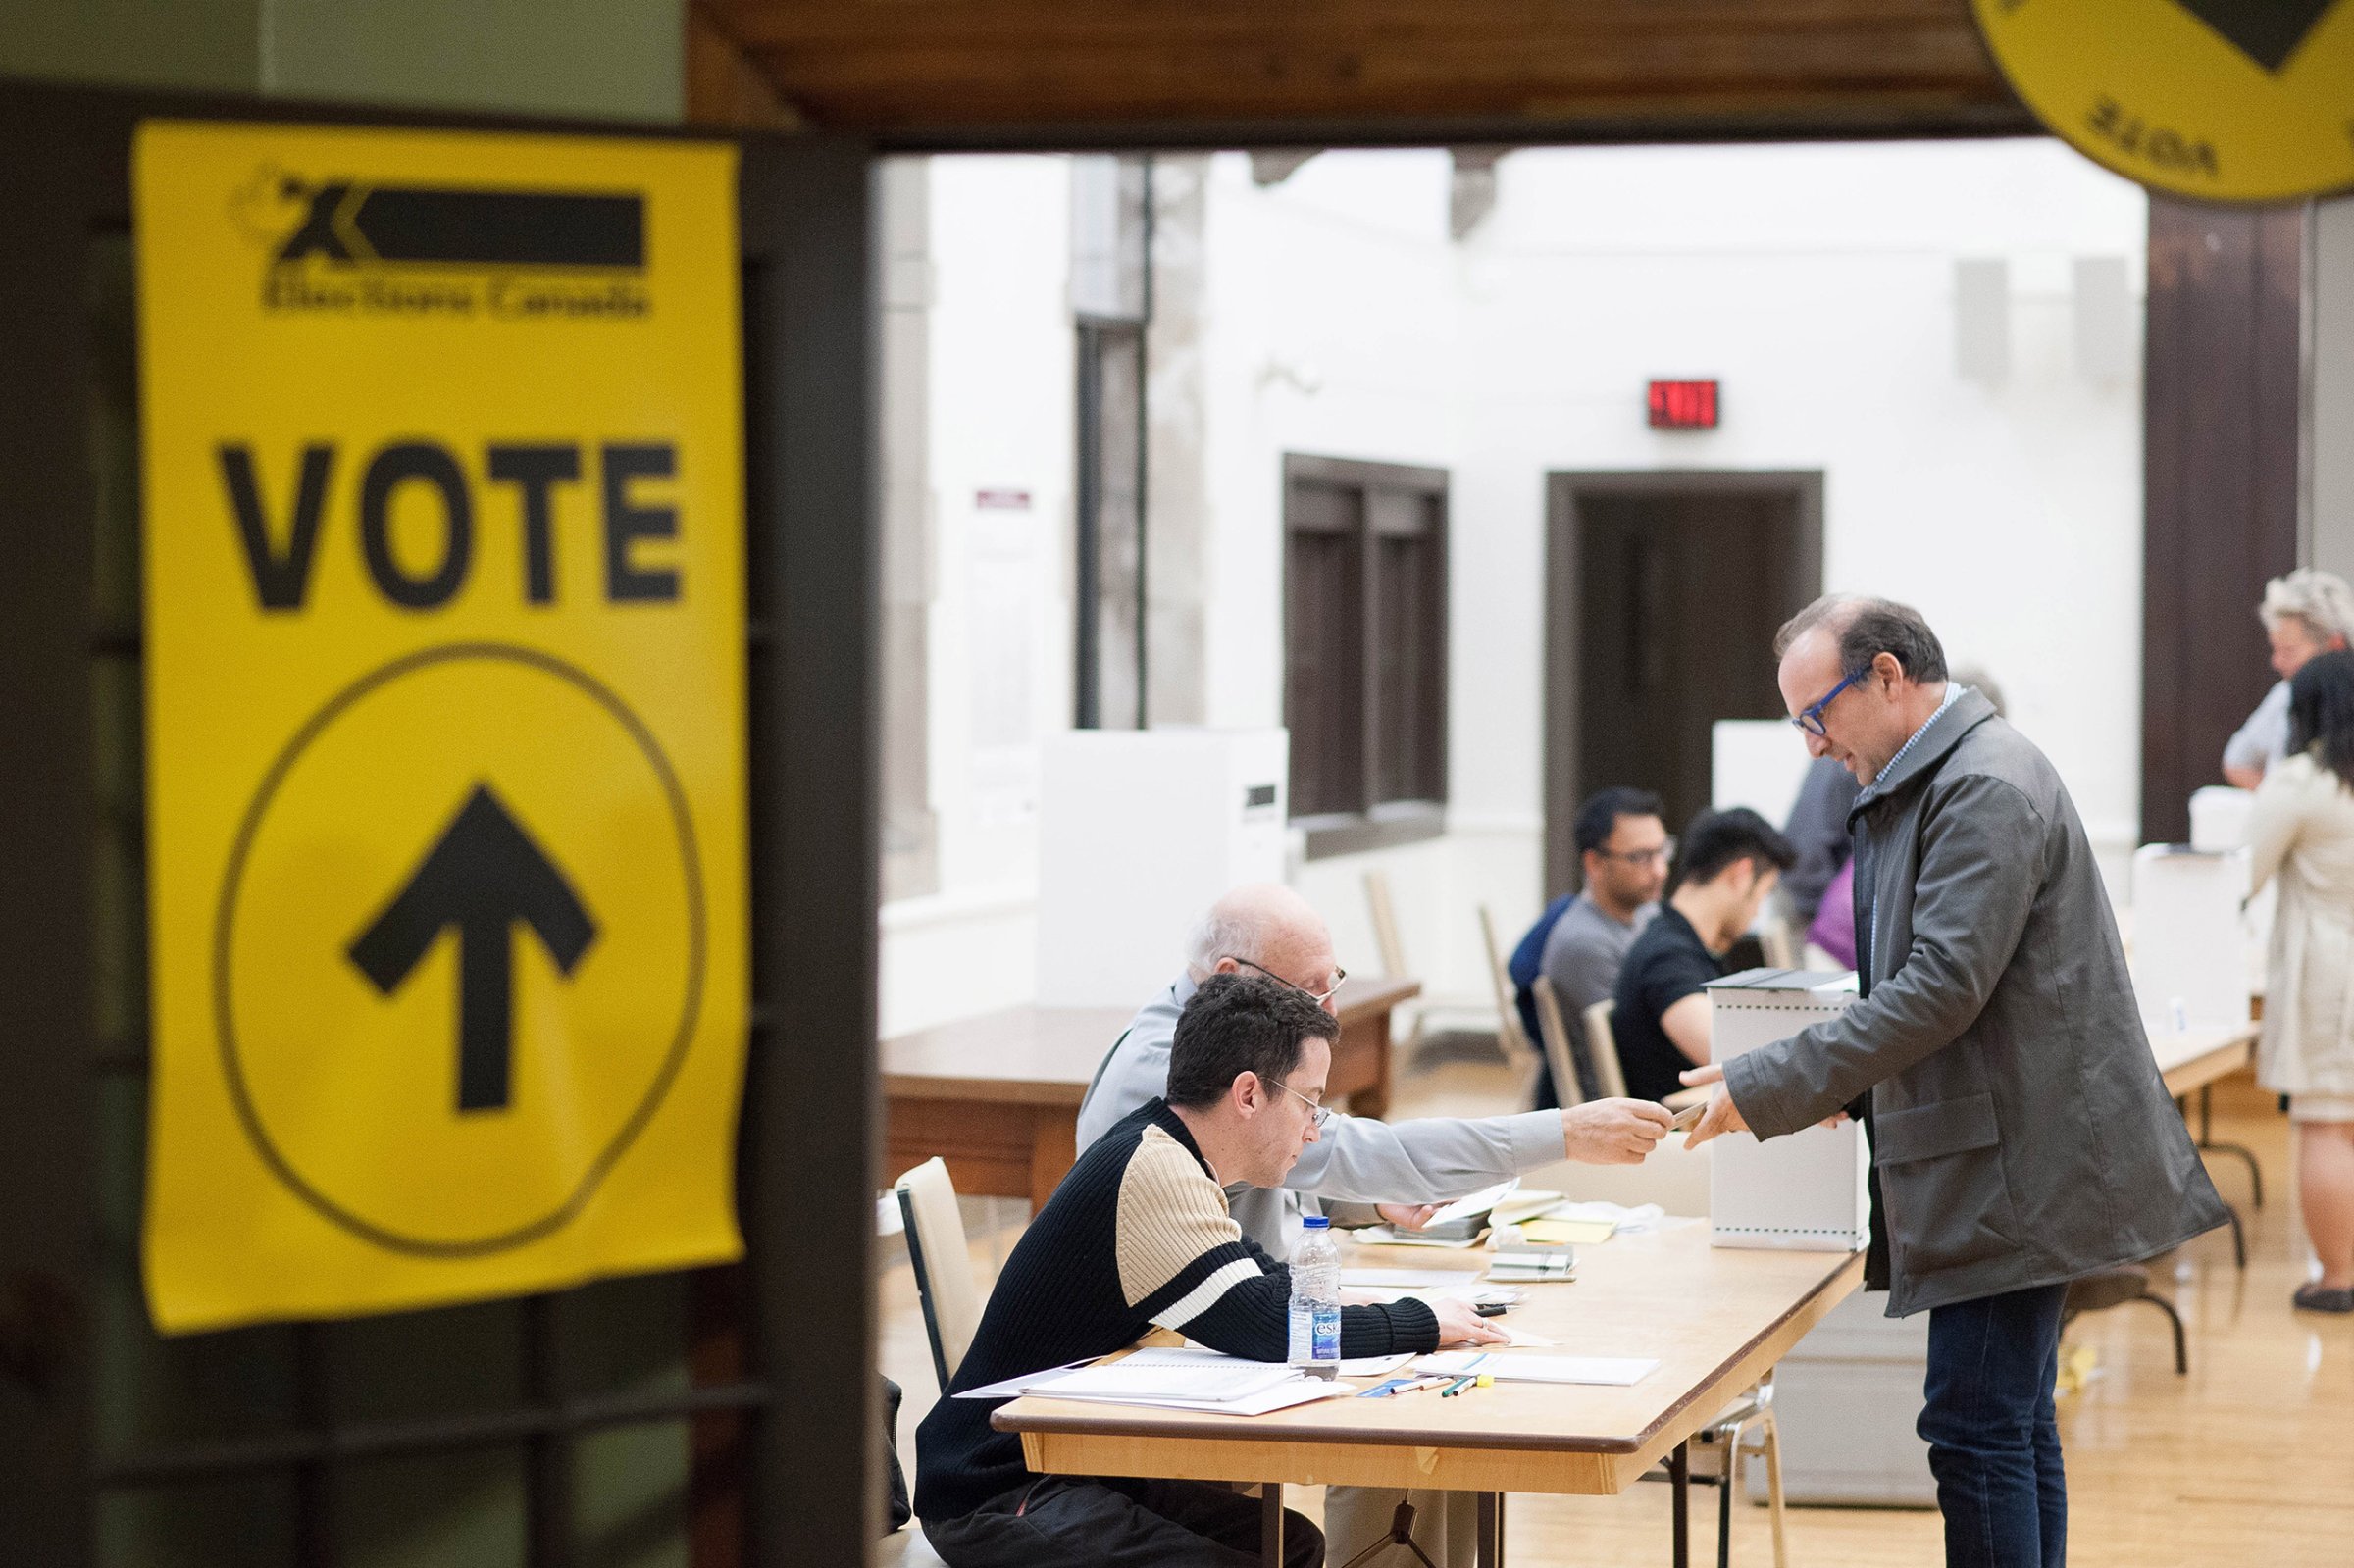 voting-canda-usa-election-2016-james-macdonald